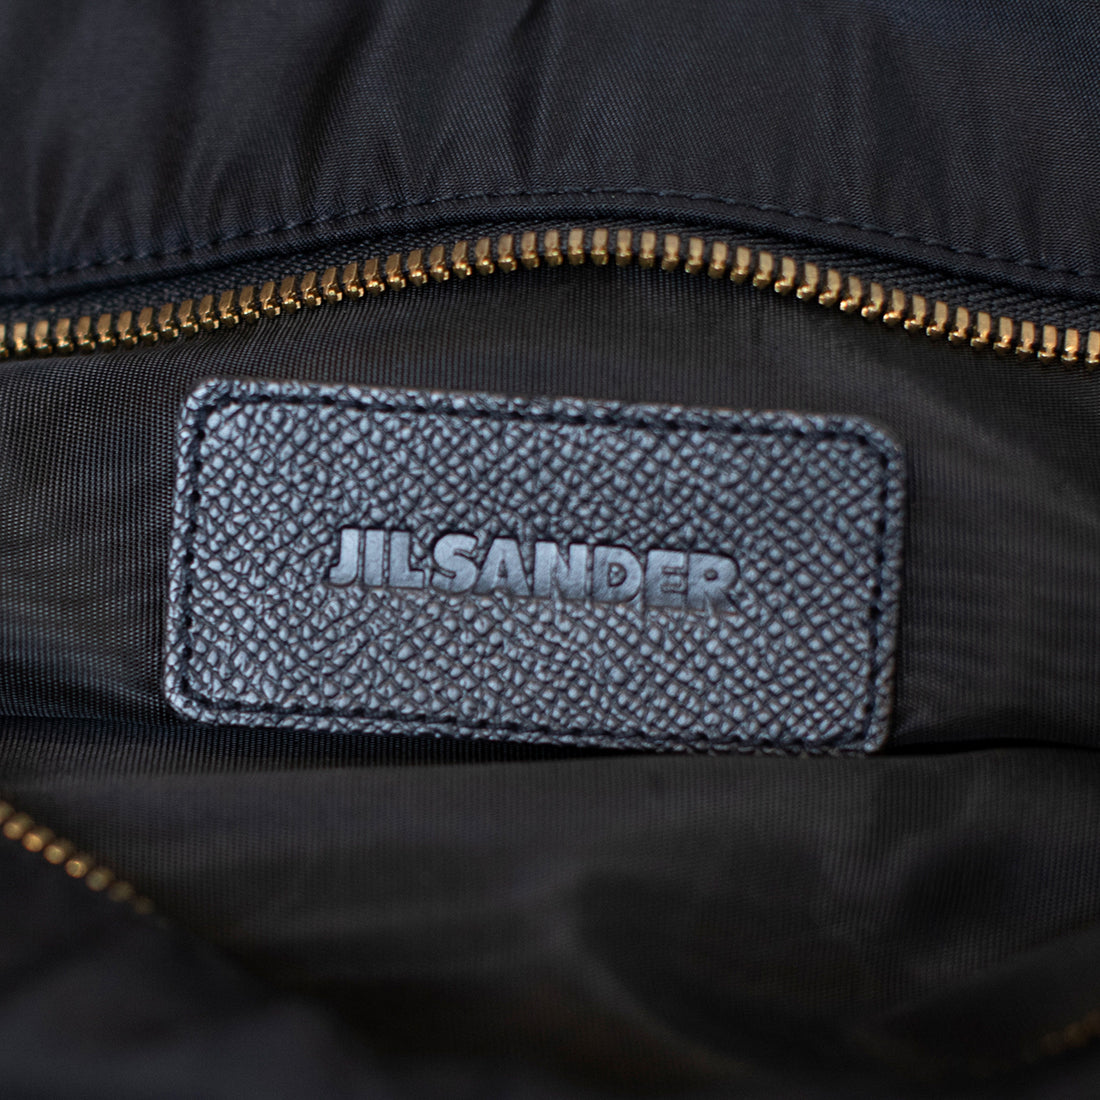 Jil Sander vintage nylon messenger bag